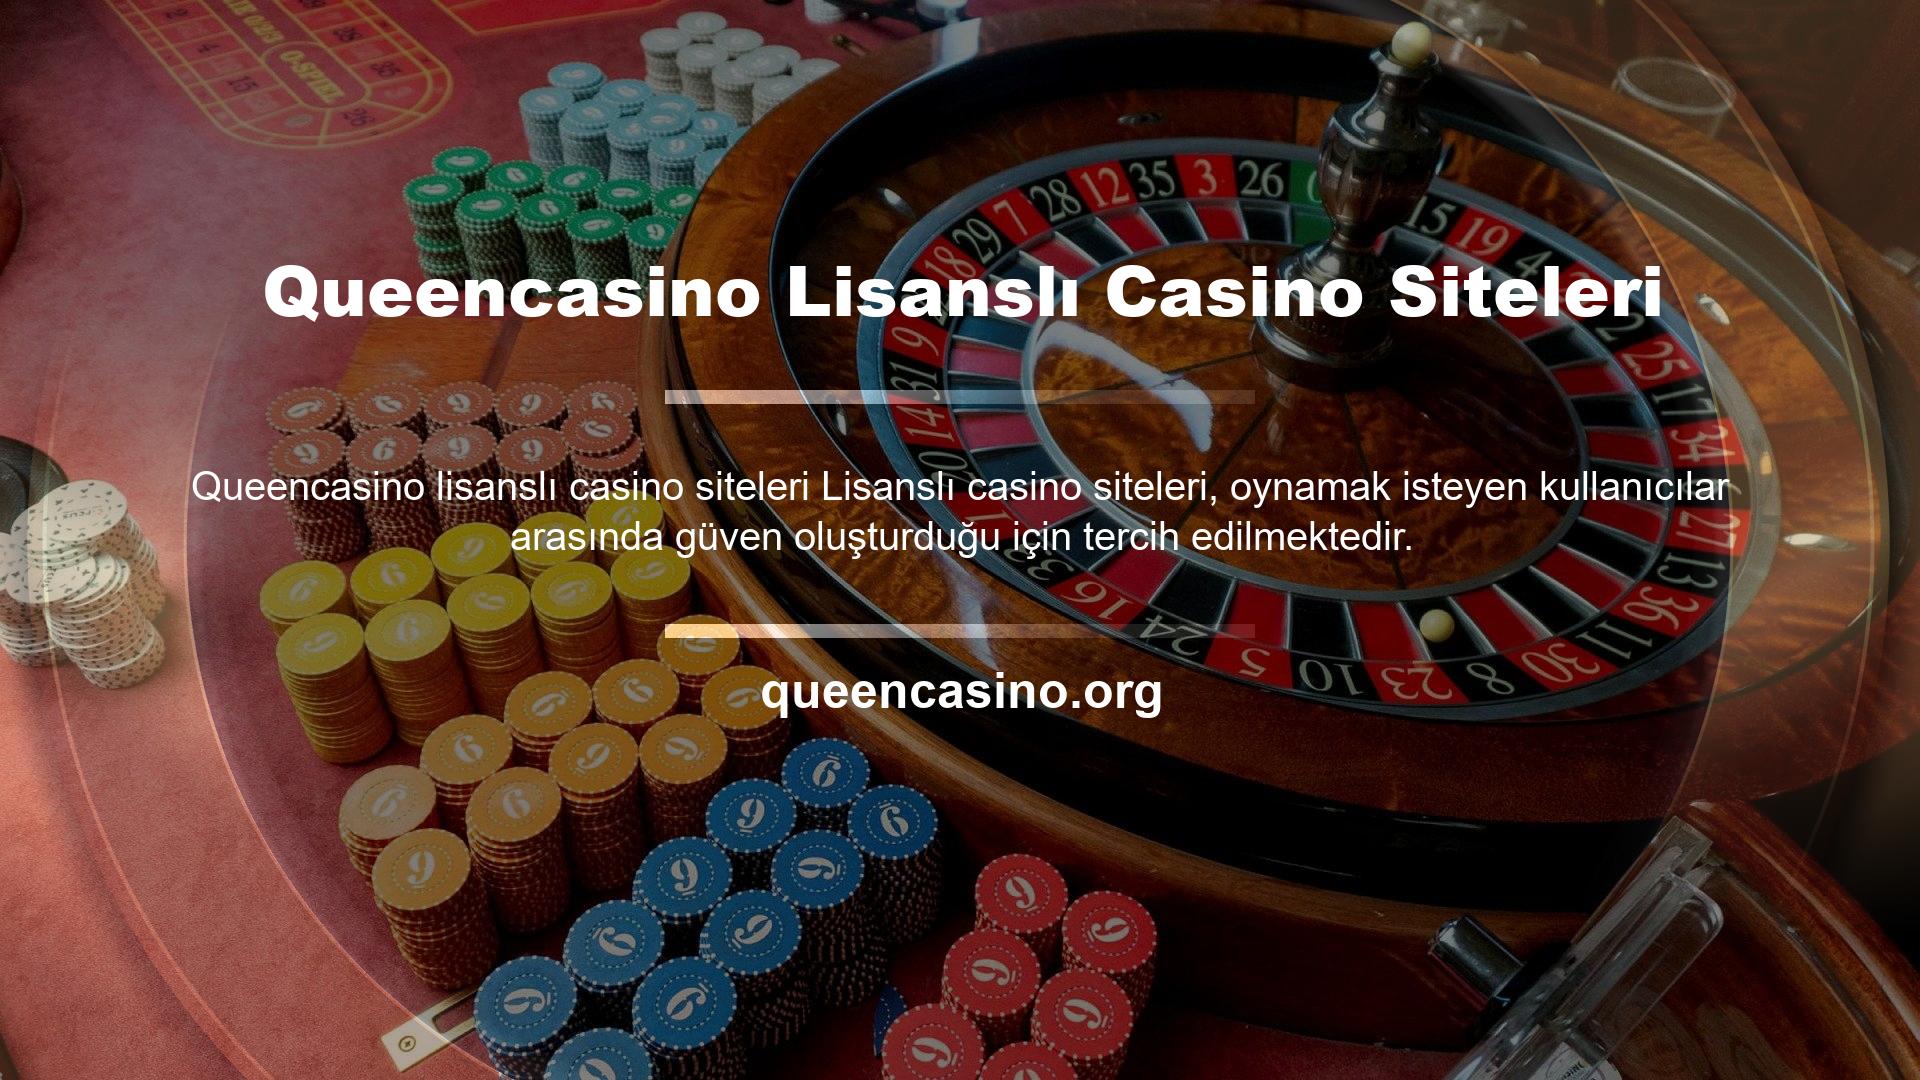 Queencasino Lisanslı Casino Siteleri